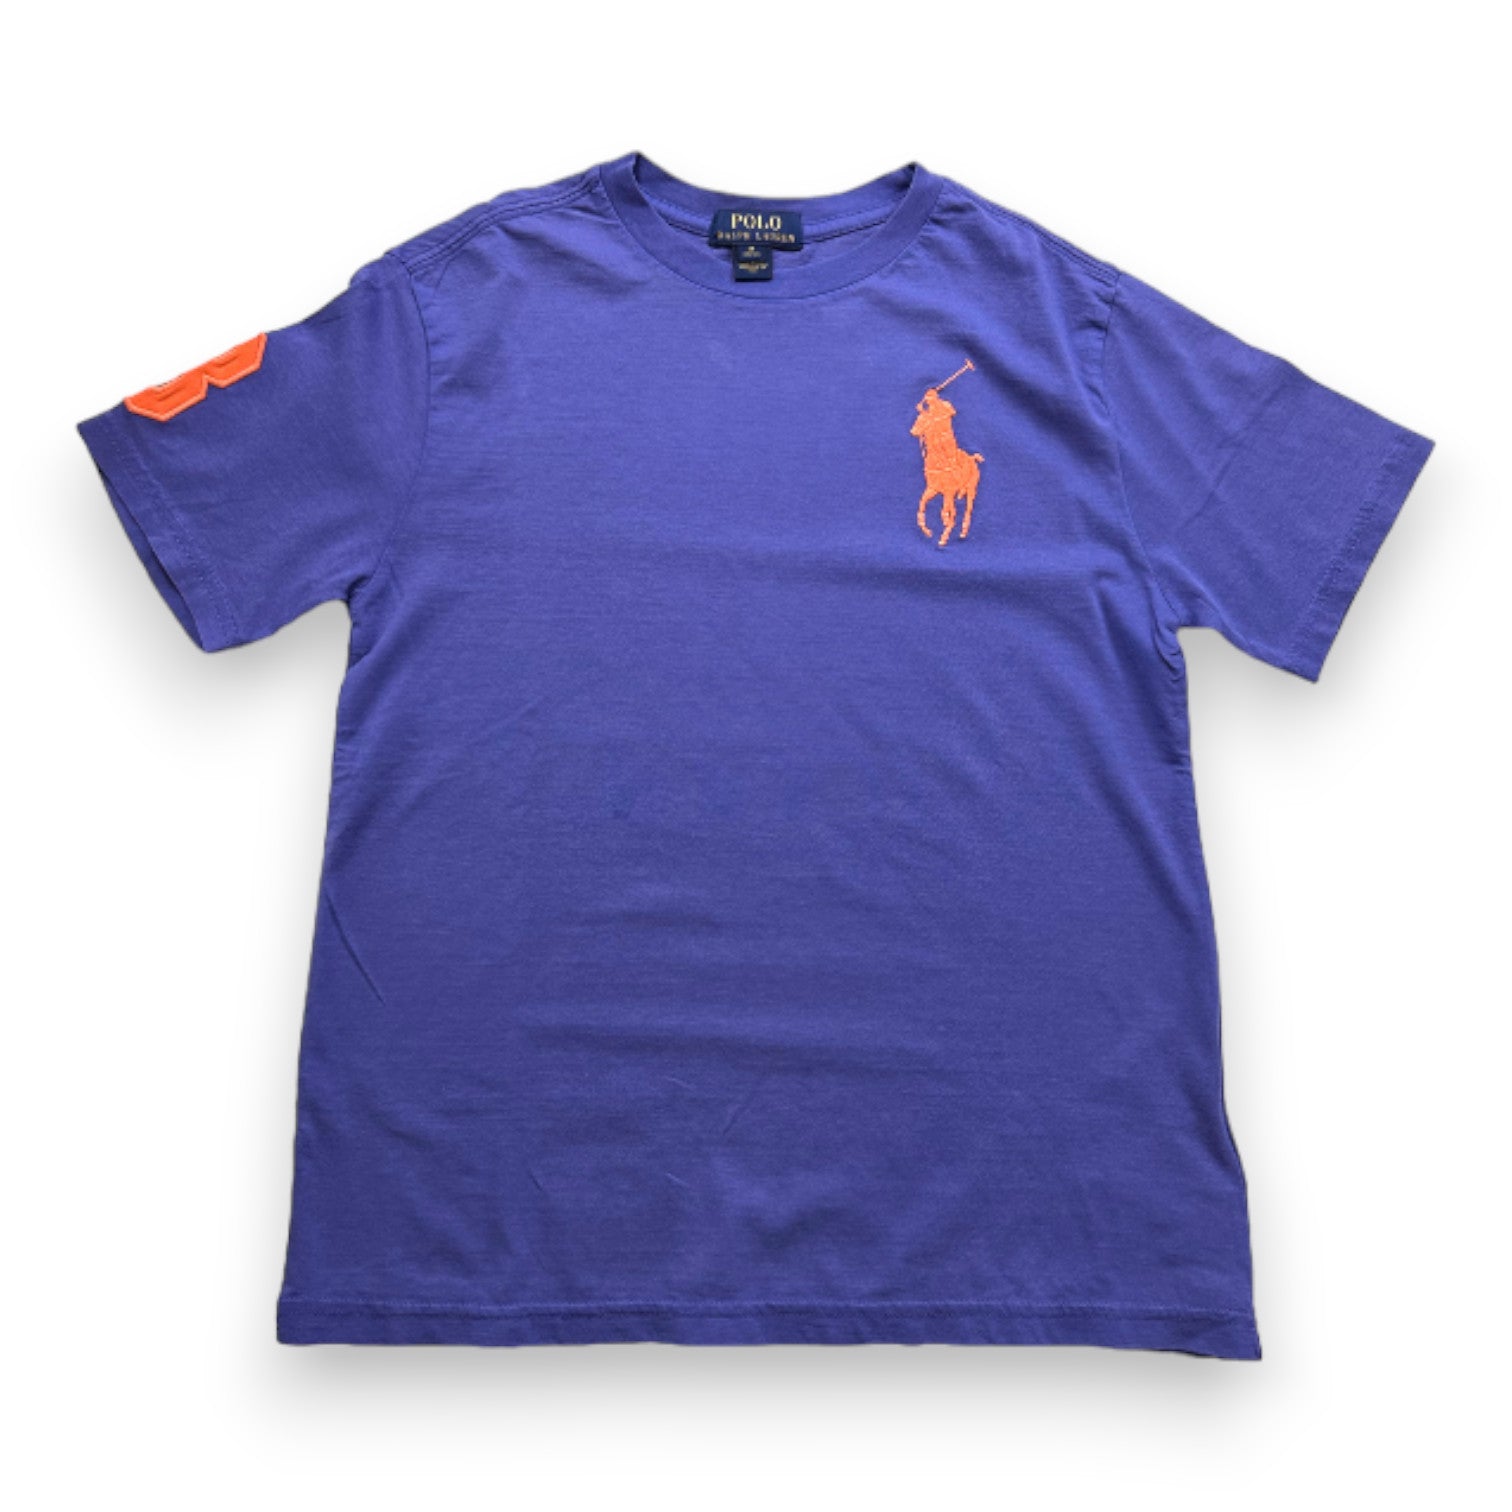 RALPH LAUREN - T-shirt à manches courtes bleu - 10 ans